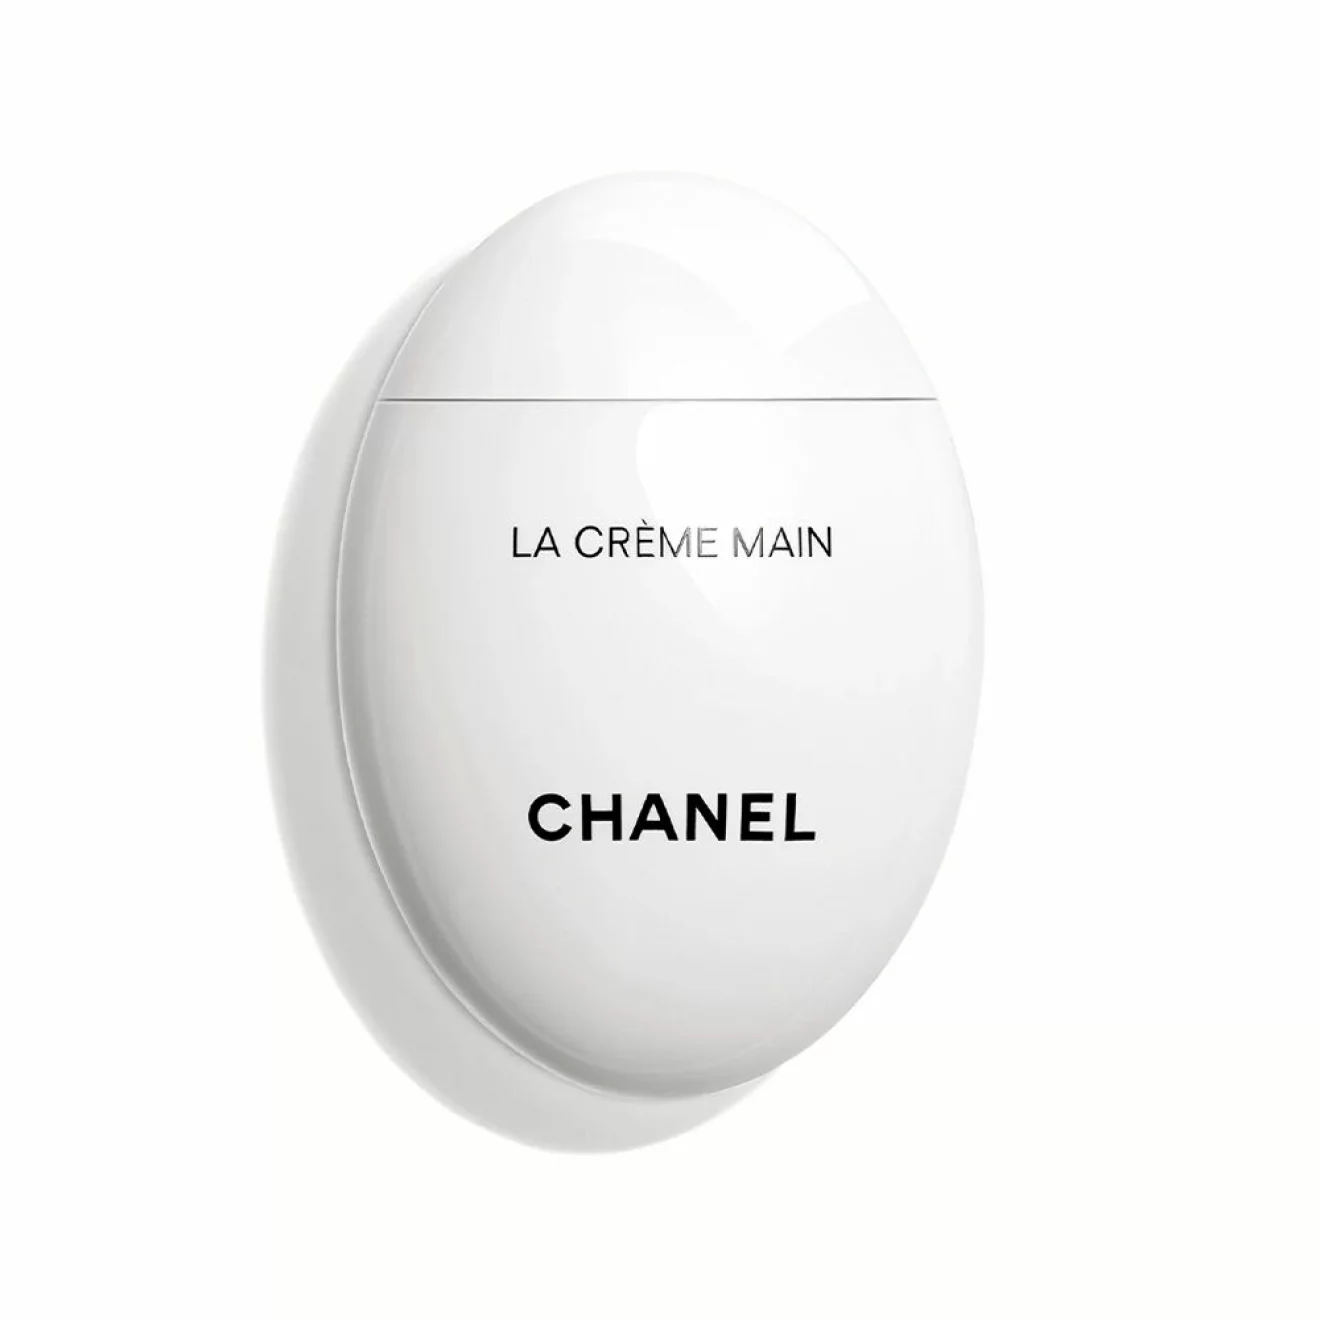 Handcrème, 575  kr, Chanel.